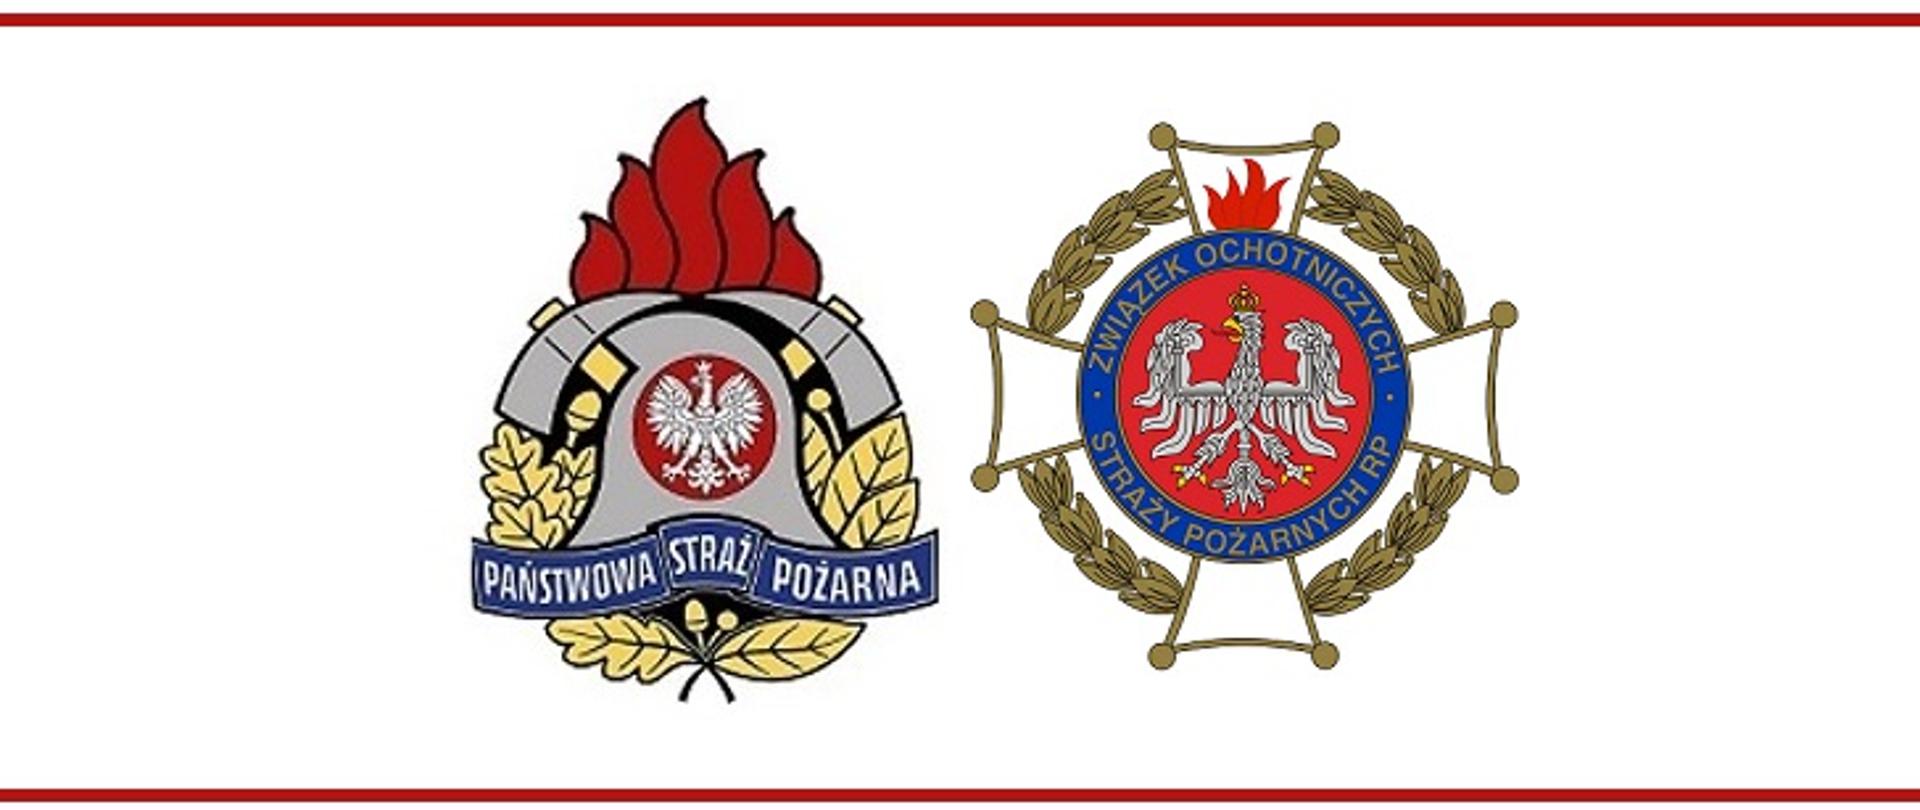 Zdjęcie przedstawia dwa loga. Państwowej Straży Pożarnej i Ochotniczej Strżay Pożarnej